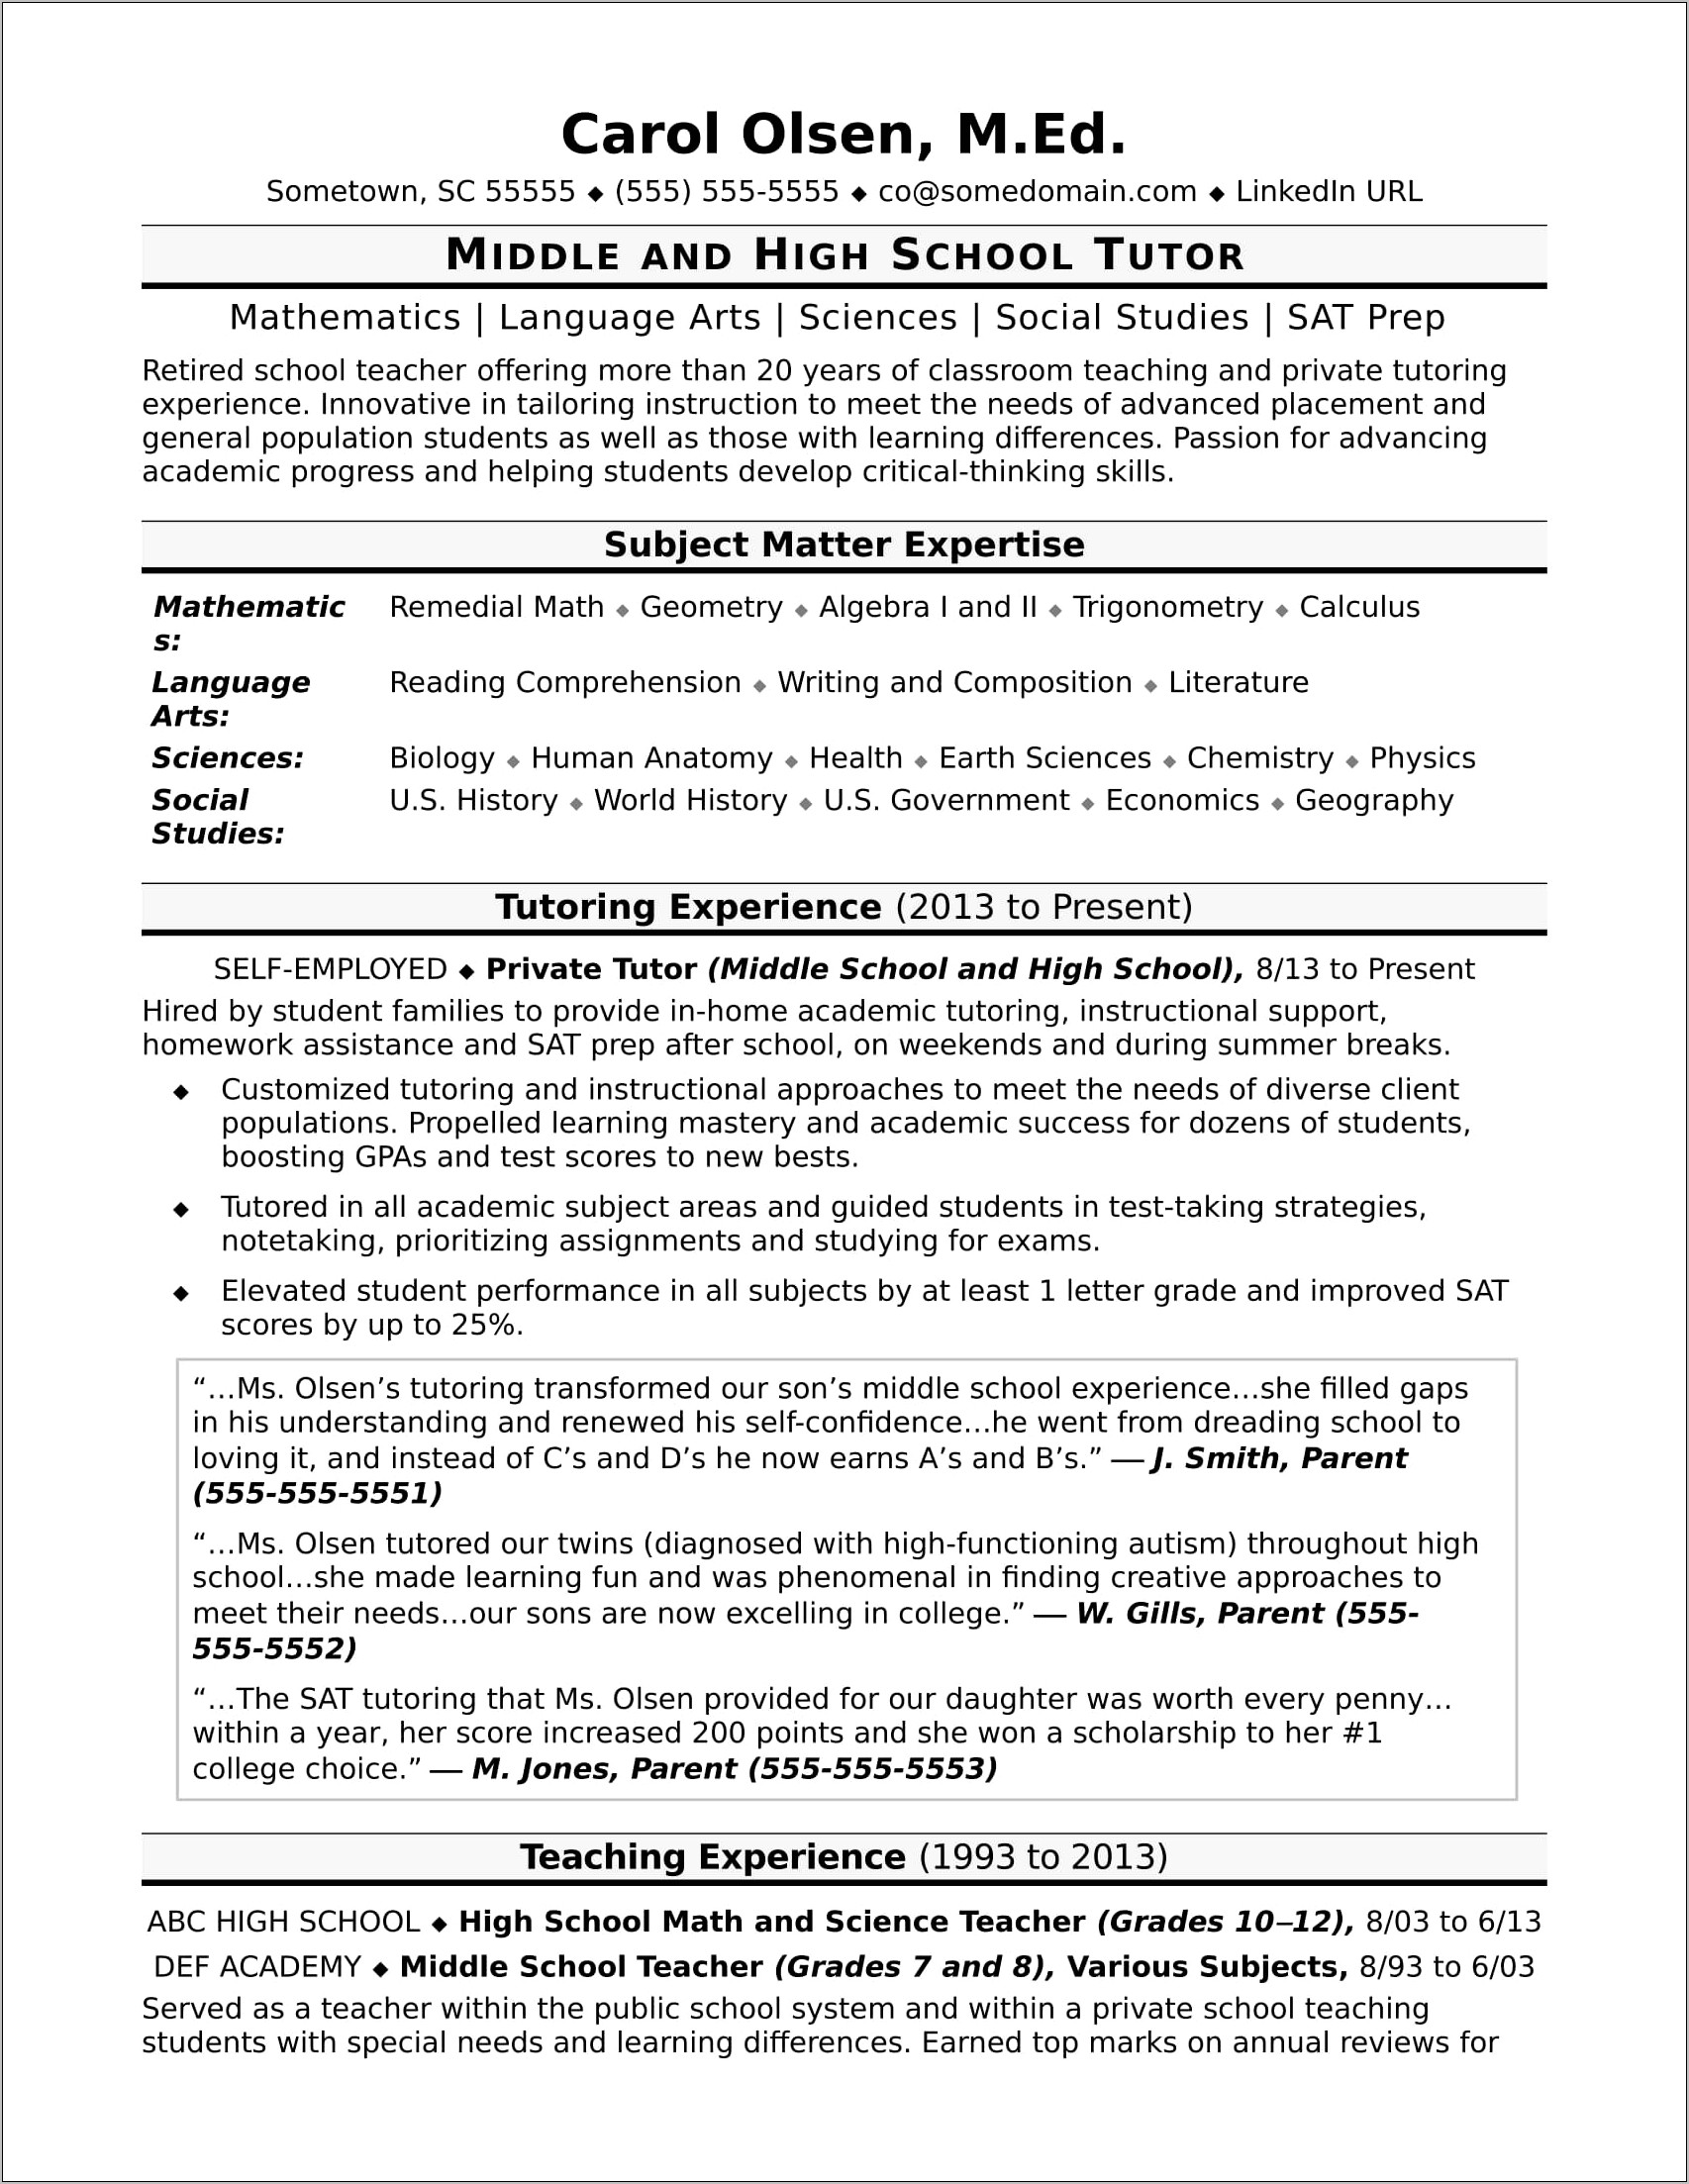 Example Resume For Elementary School Teacher